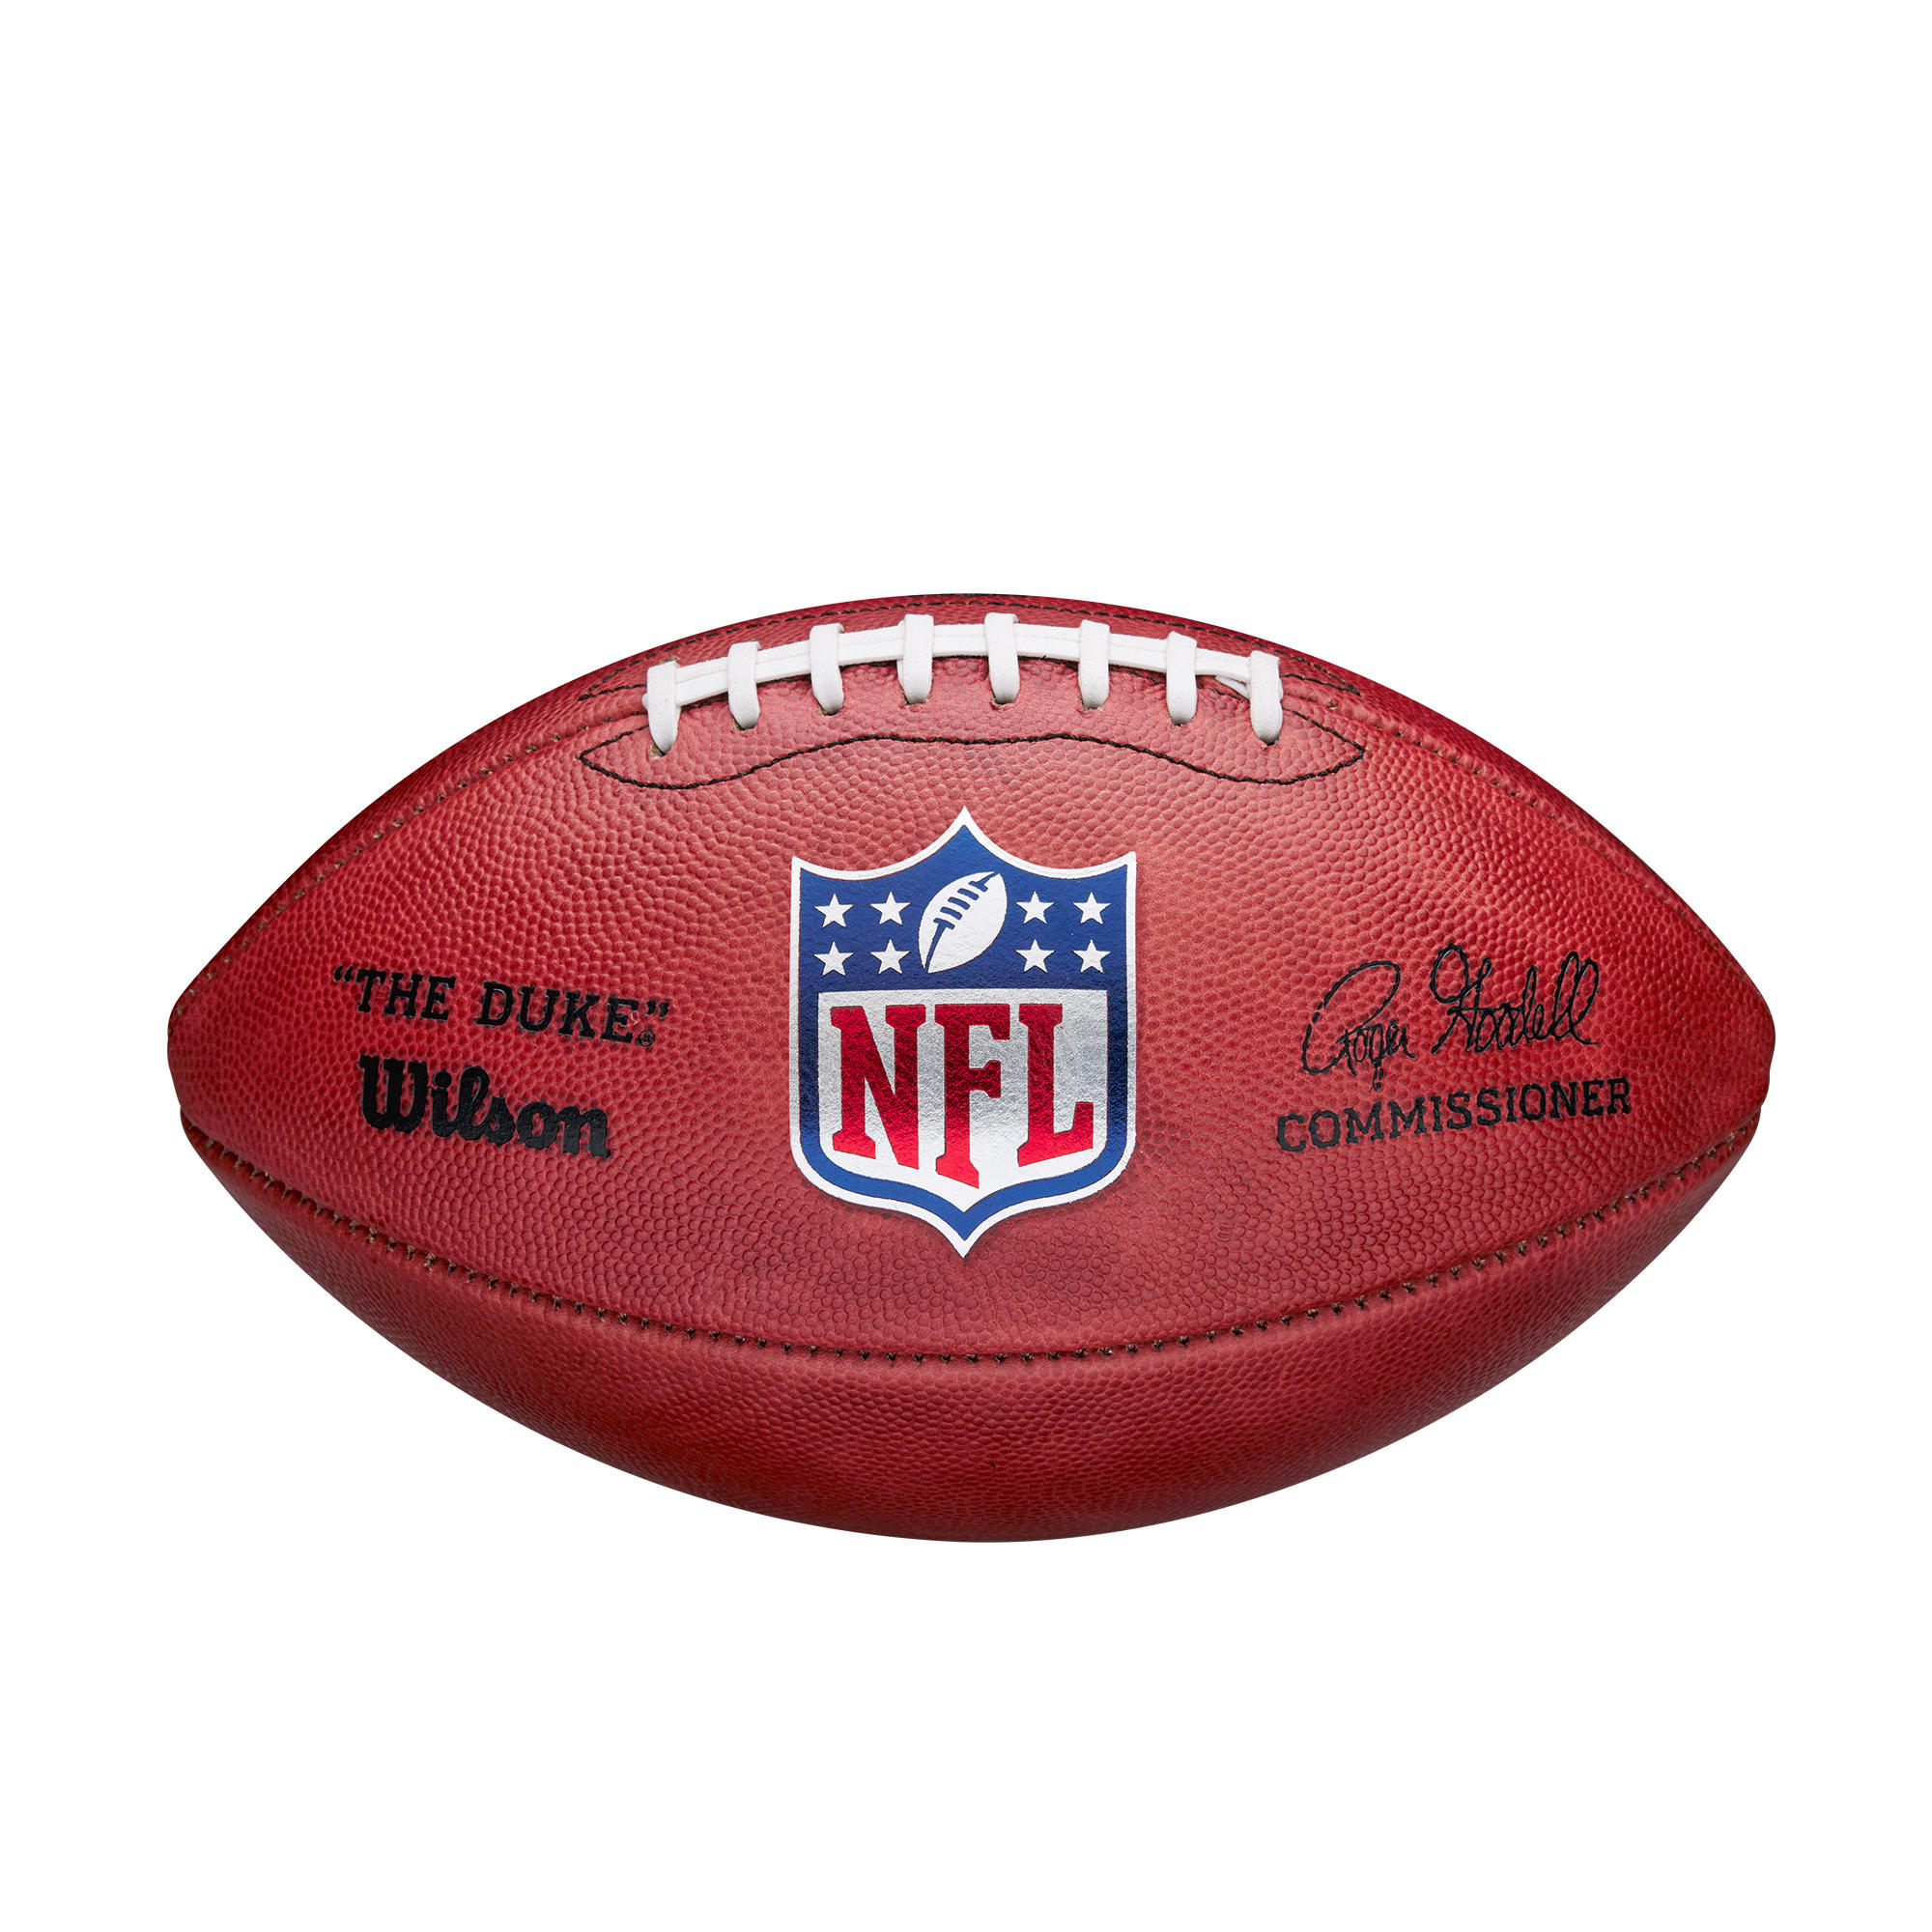 WILSON NFL DUKE GAME BALL Ballon officiel de la NFL en cuir pour les 14 ans et plus - WILSON - Official